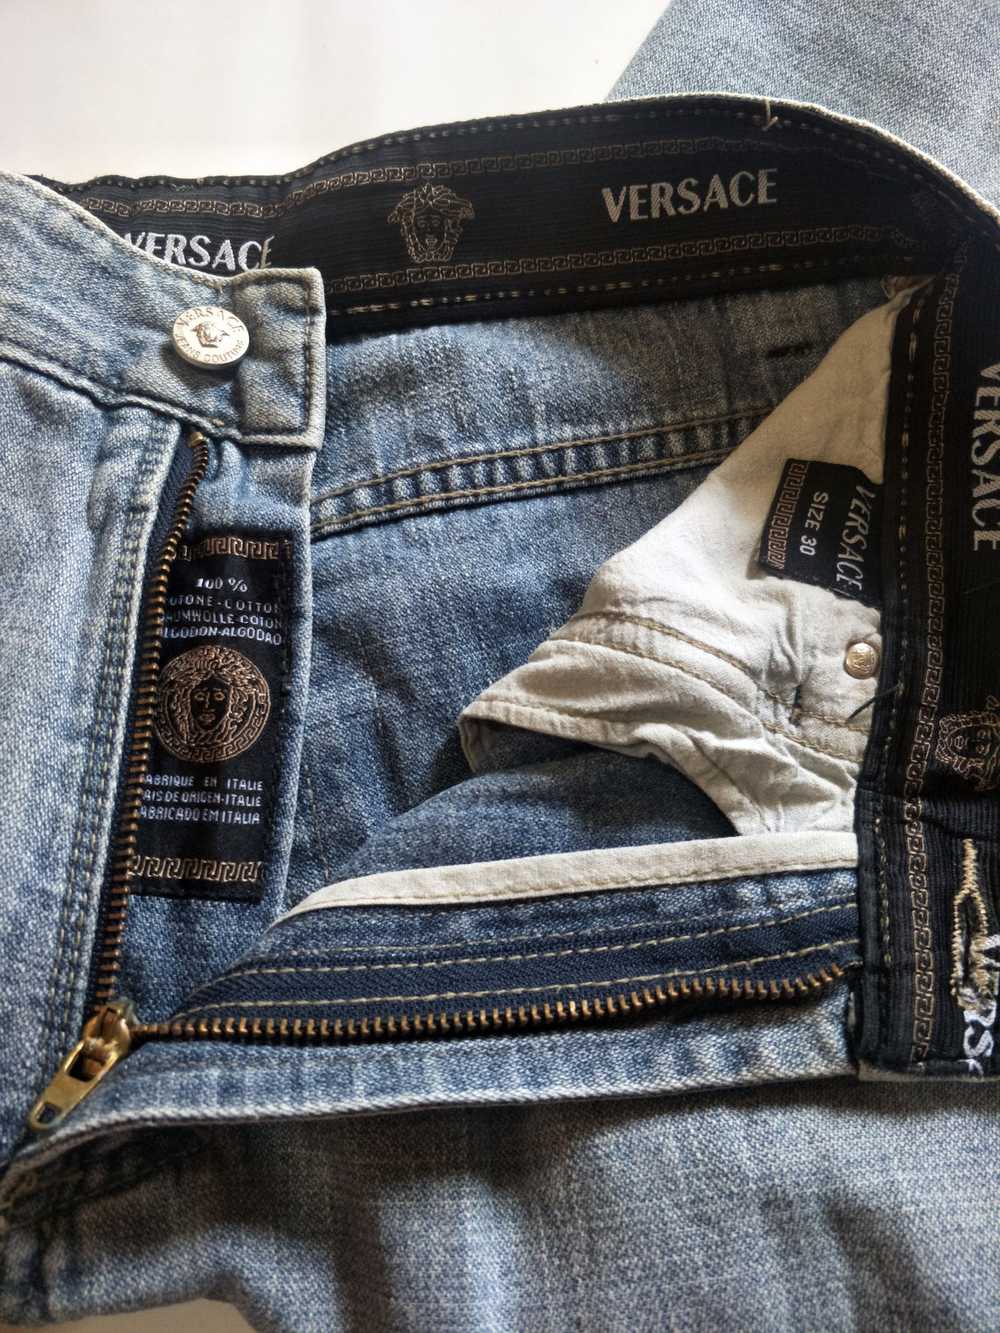 Versace Versace Denim Jeans - image 7